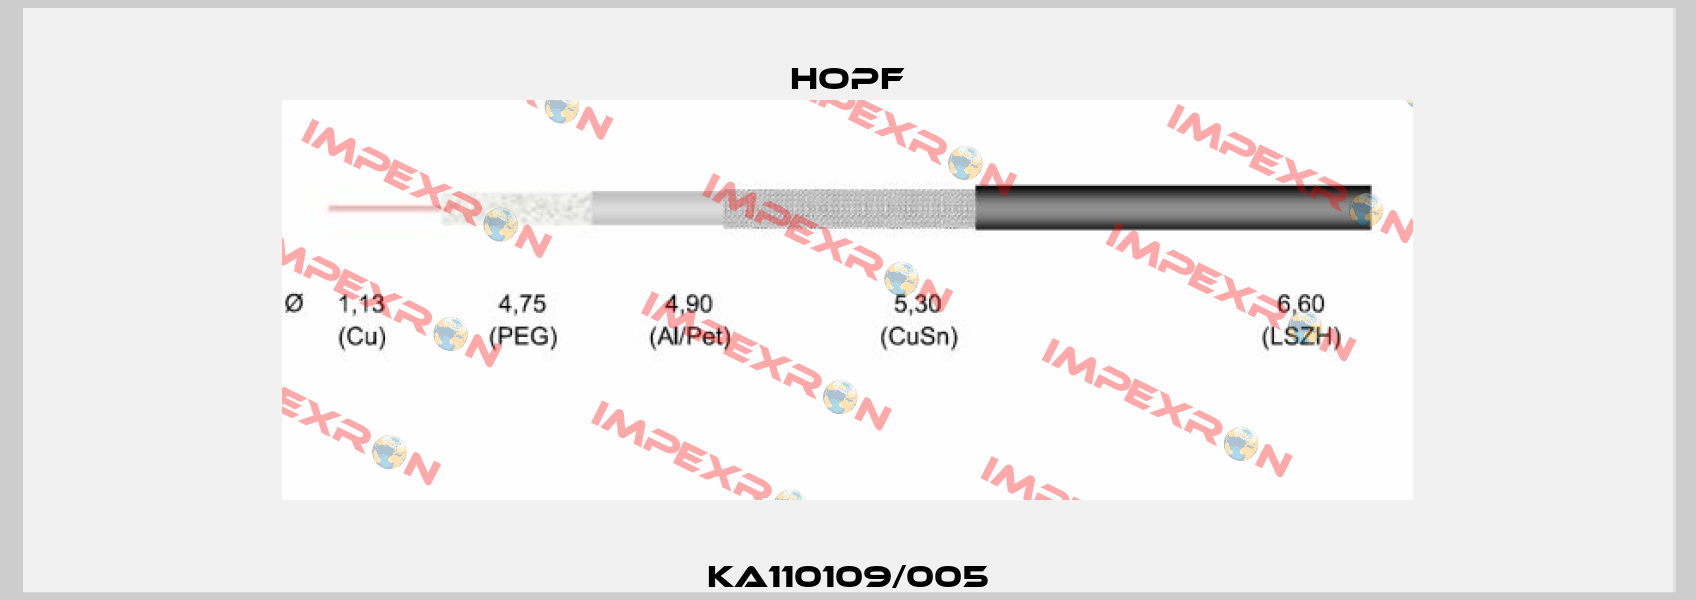 KA110109/005 Hopf